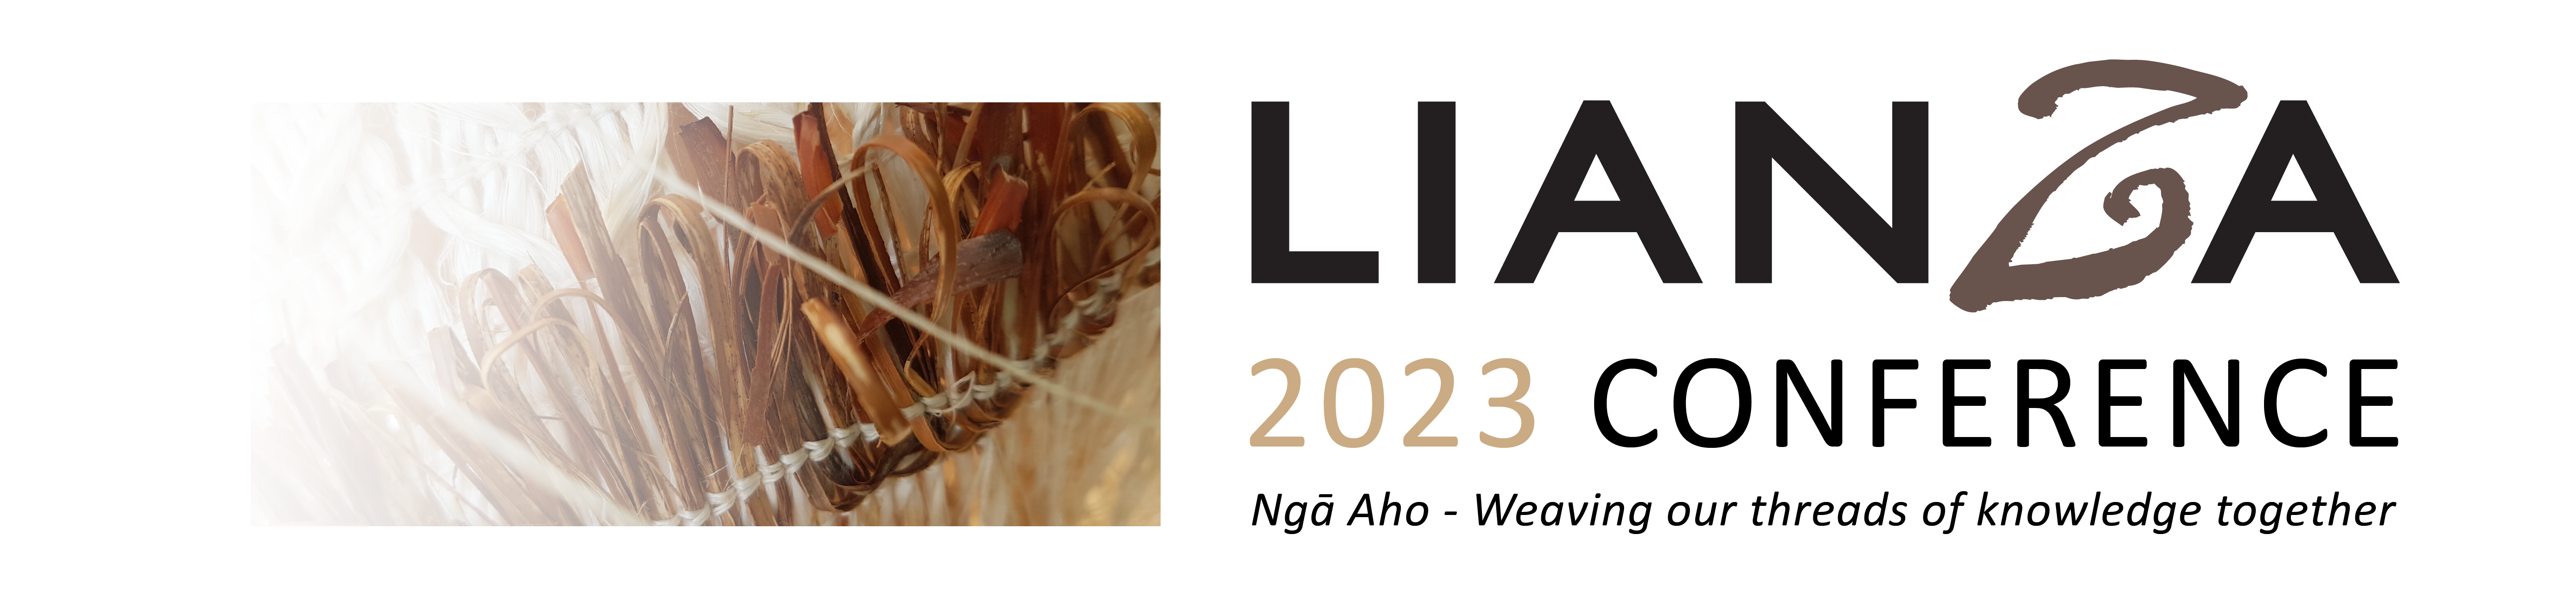 LIANZA 2023 Conference-01